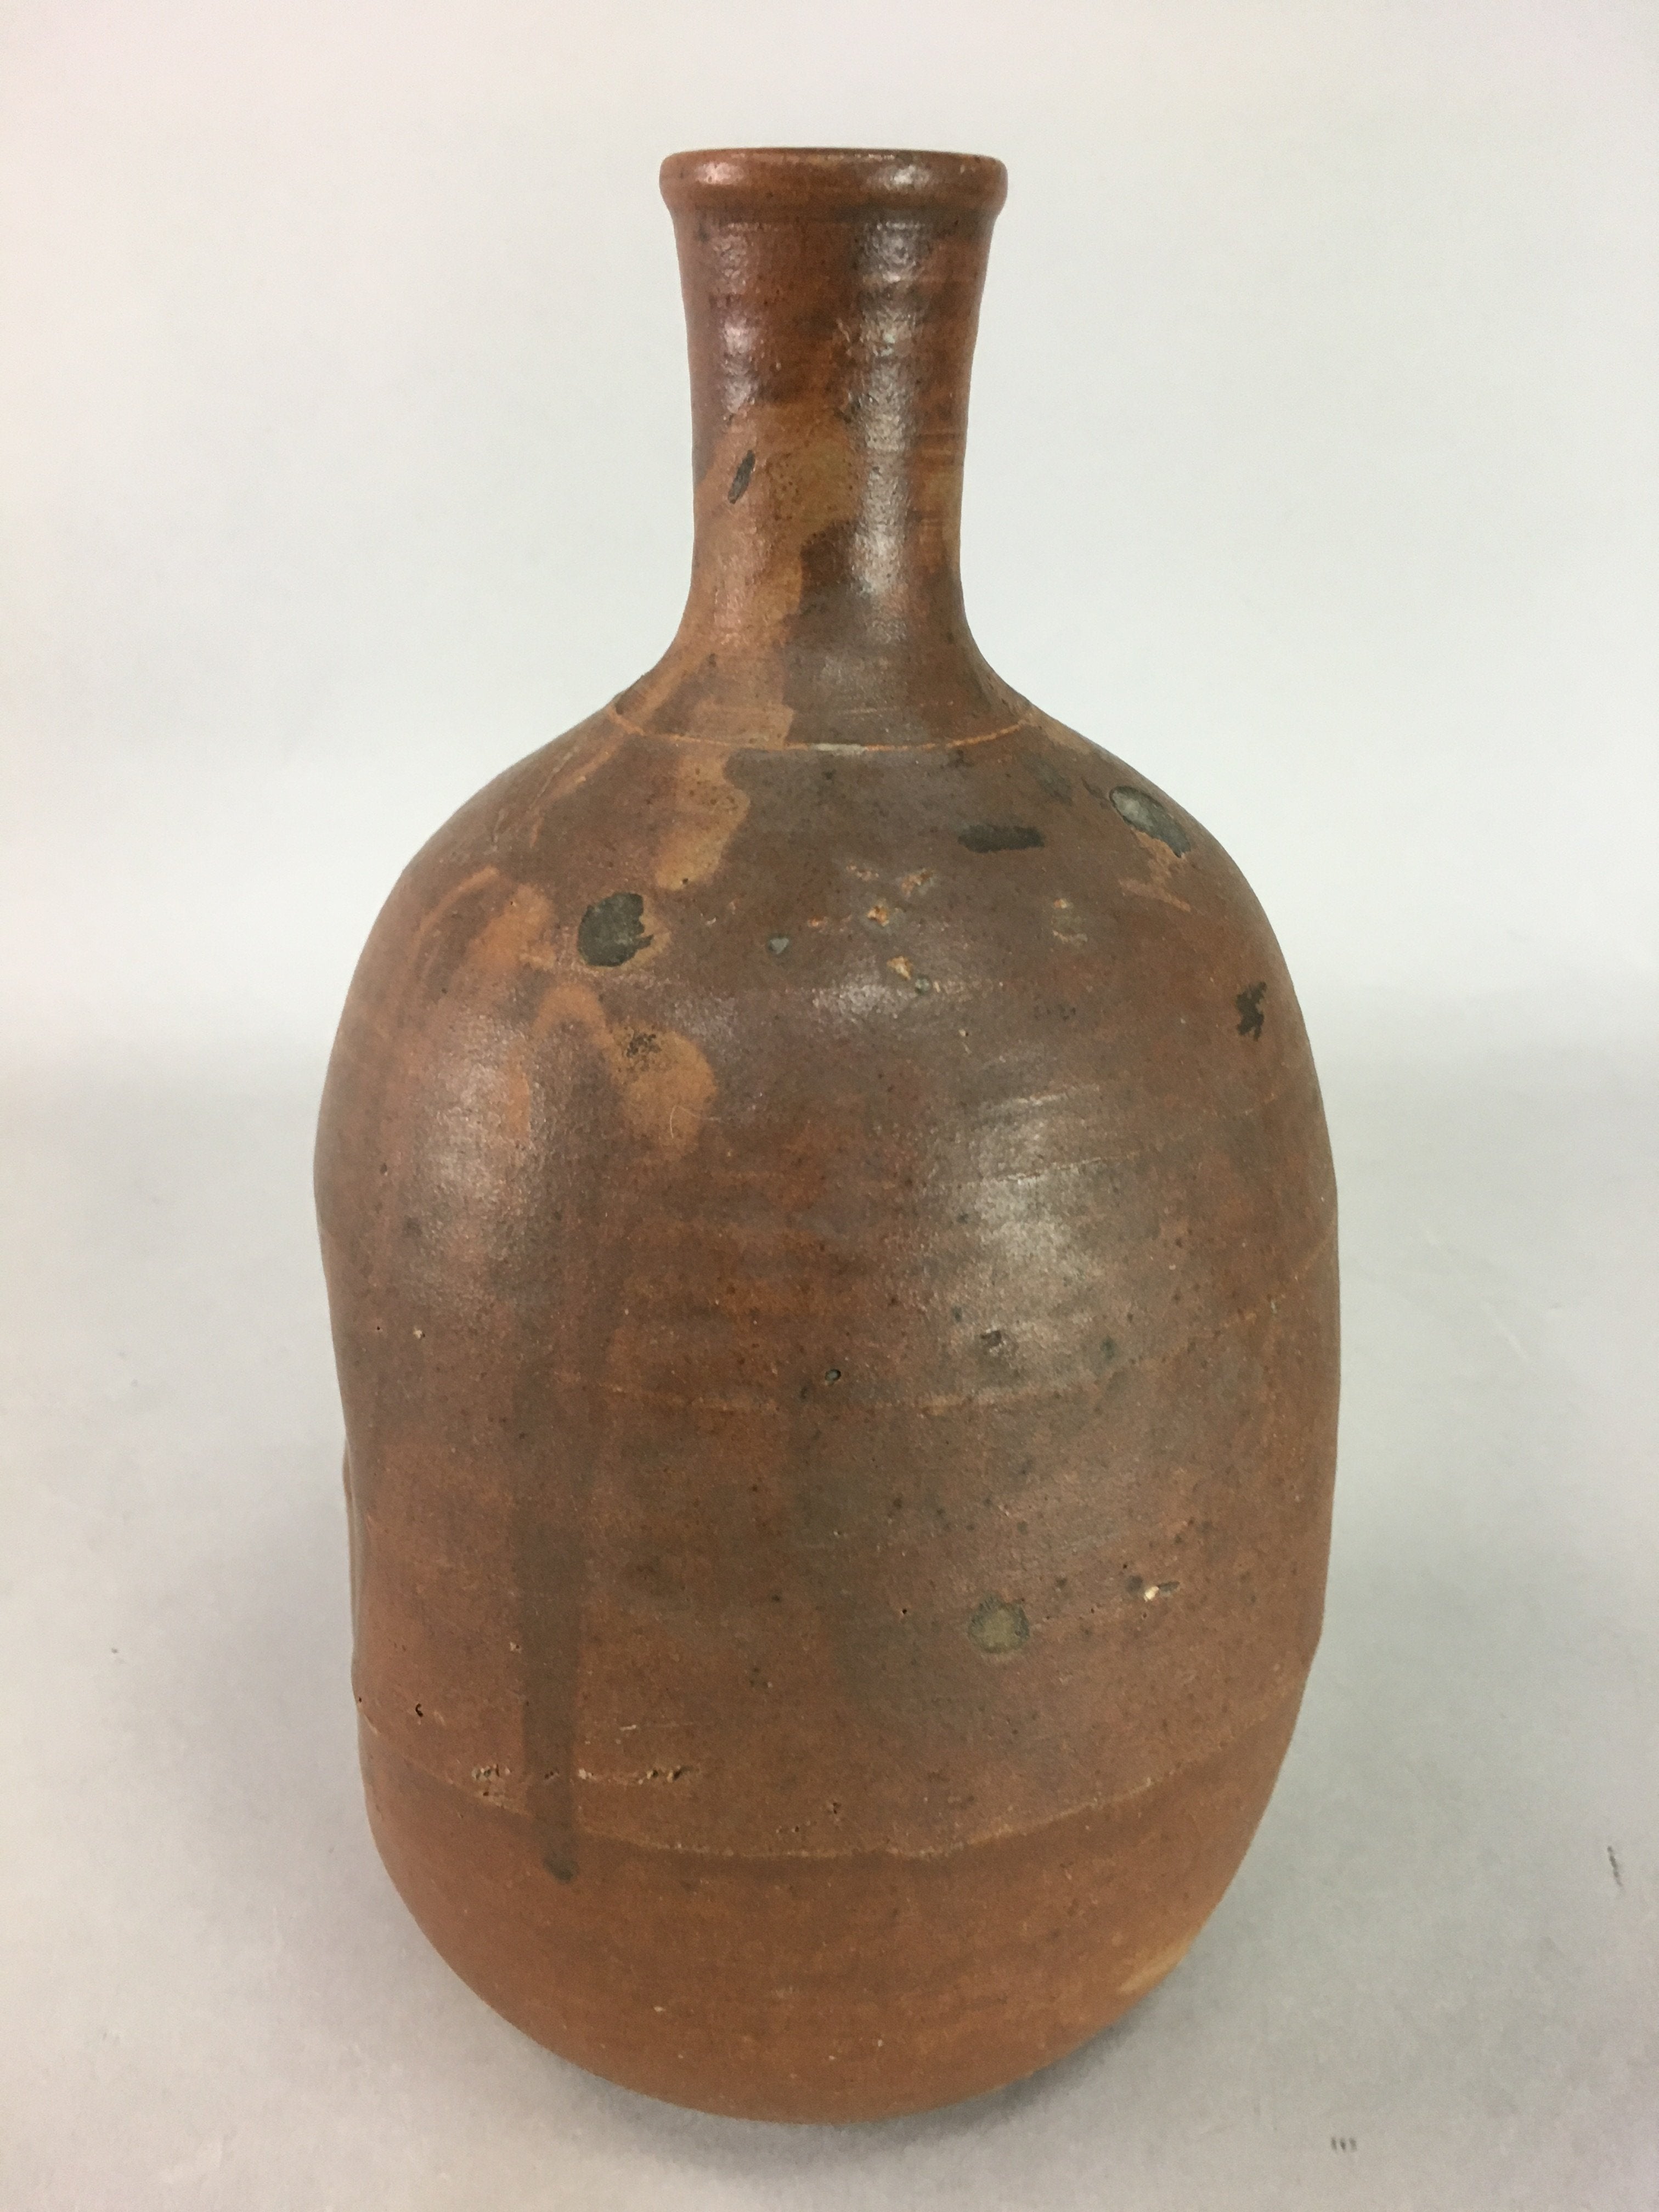 Japanese Ceramic Sake Bottle Vtg Pottery Tokkuri Brown Natural Glaze Dent TS172